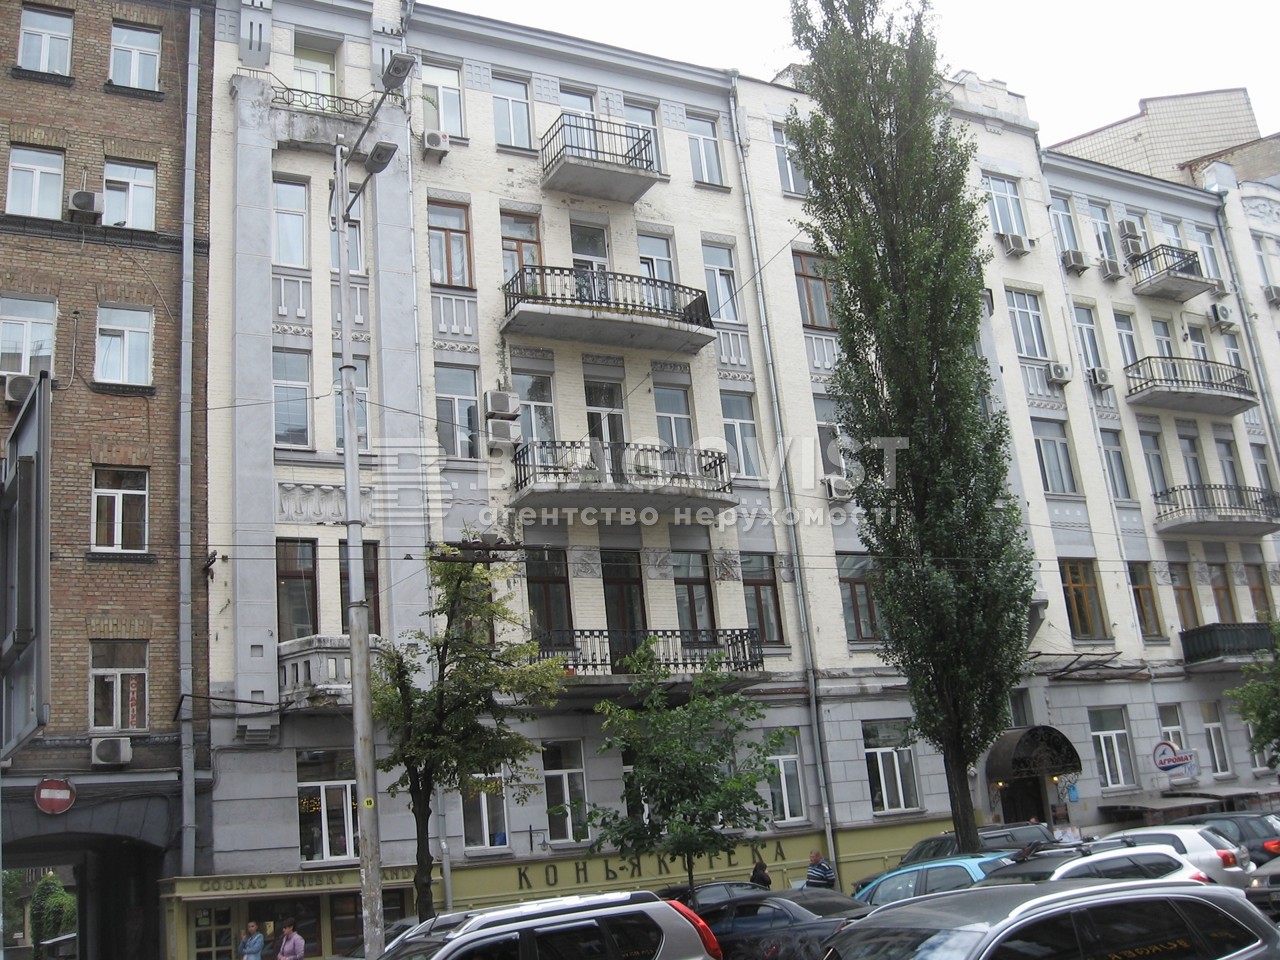  Офис, A-113576, Шота Руставели, Киев - Фото 1